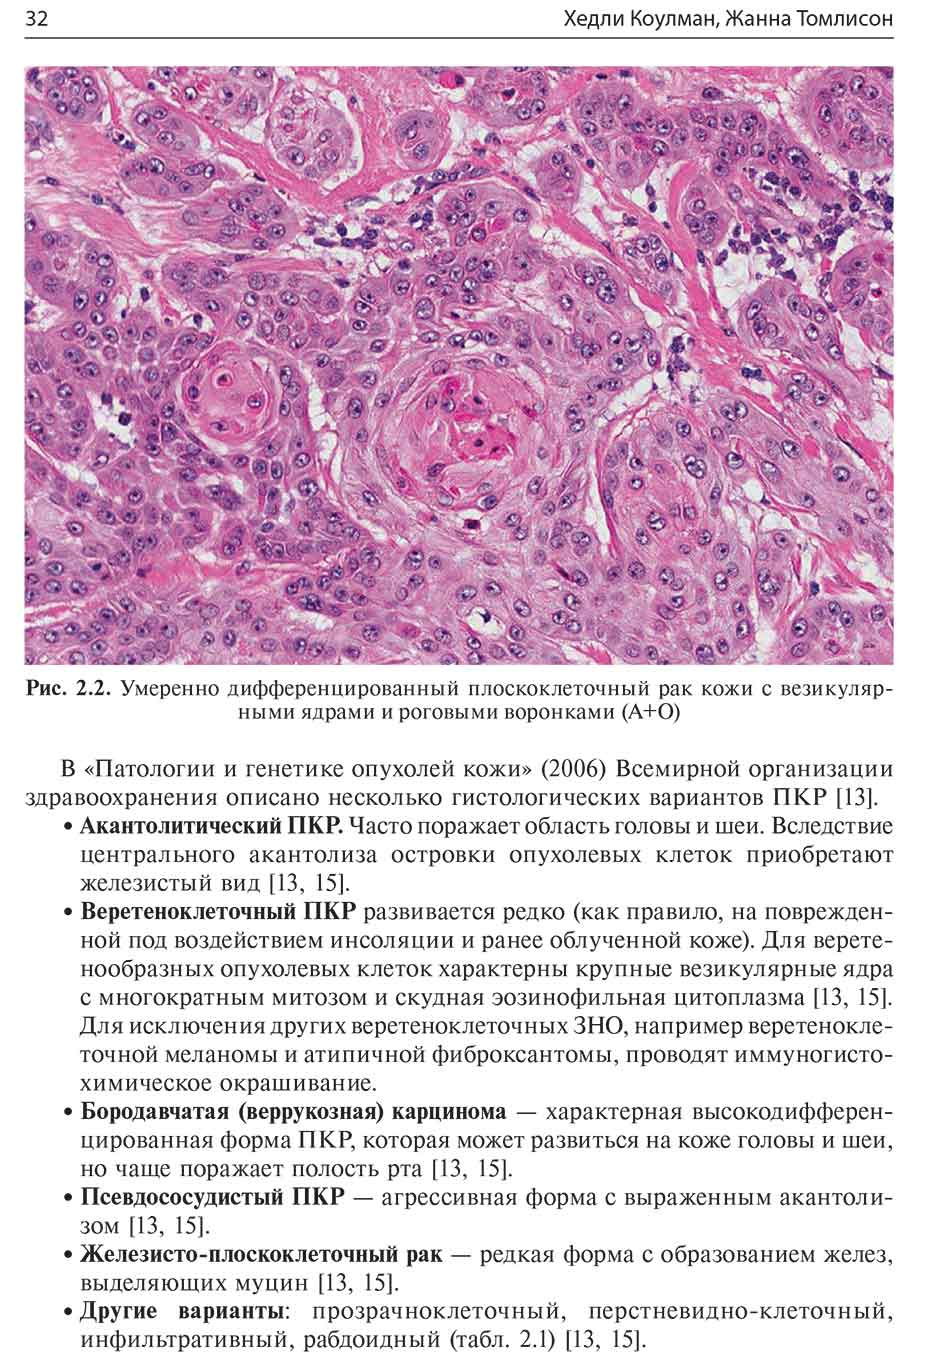 Рис. 2.2. Умеренно дифференцированный плоскоклеточный рак кожи с везикулярными ядрами и роговыми воронками (А+О)